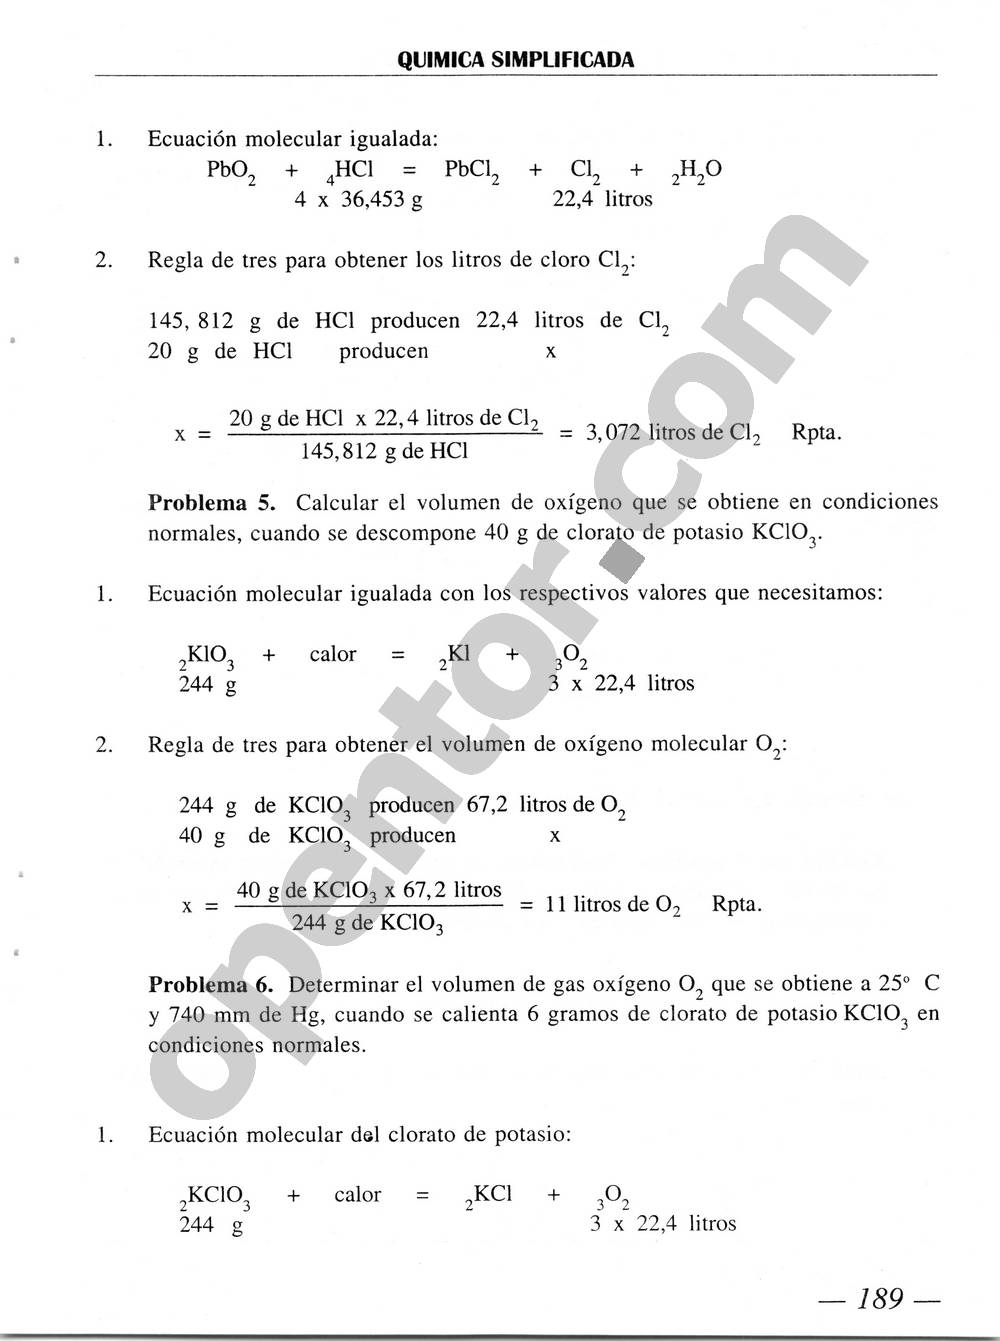 Química Simplificada de Diómedes Solano - Página 189